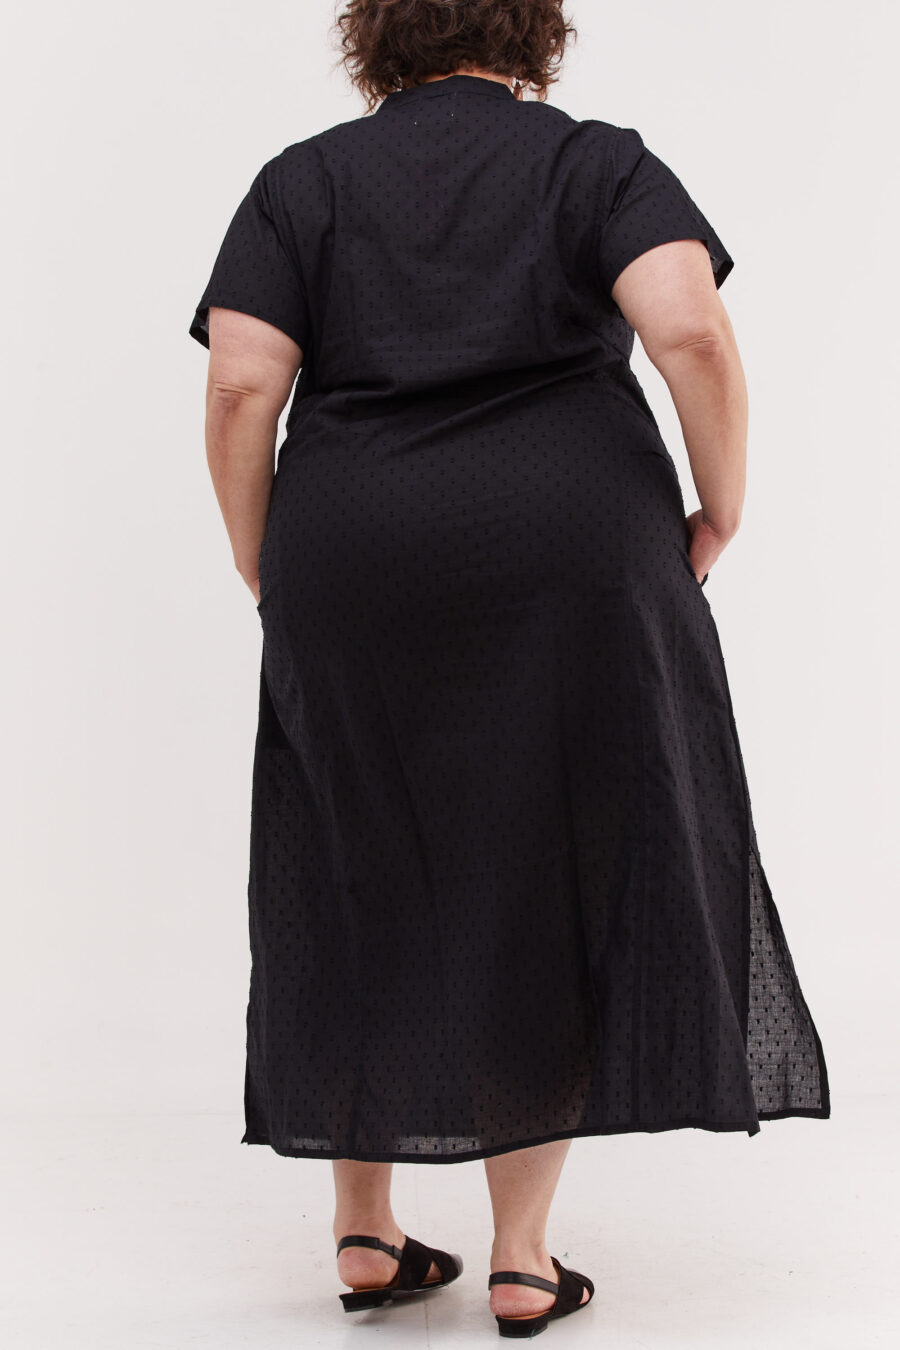 גלביה לנשים | גלבייה בעיצוב ייחודי - שמלה שחורה עם עיגולים עדינים בבד שיוצרים טקסטורה מיוחדת